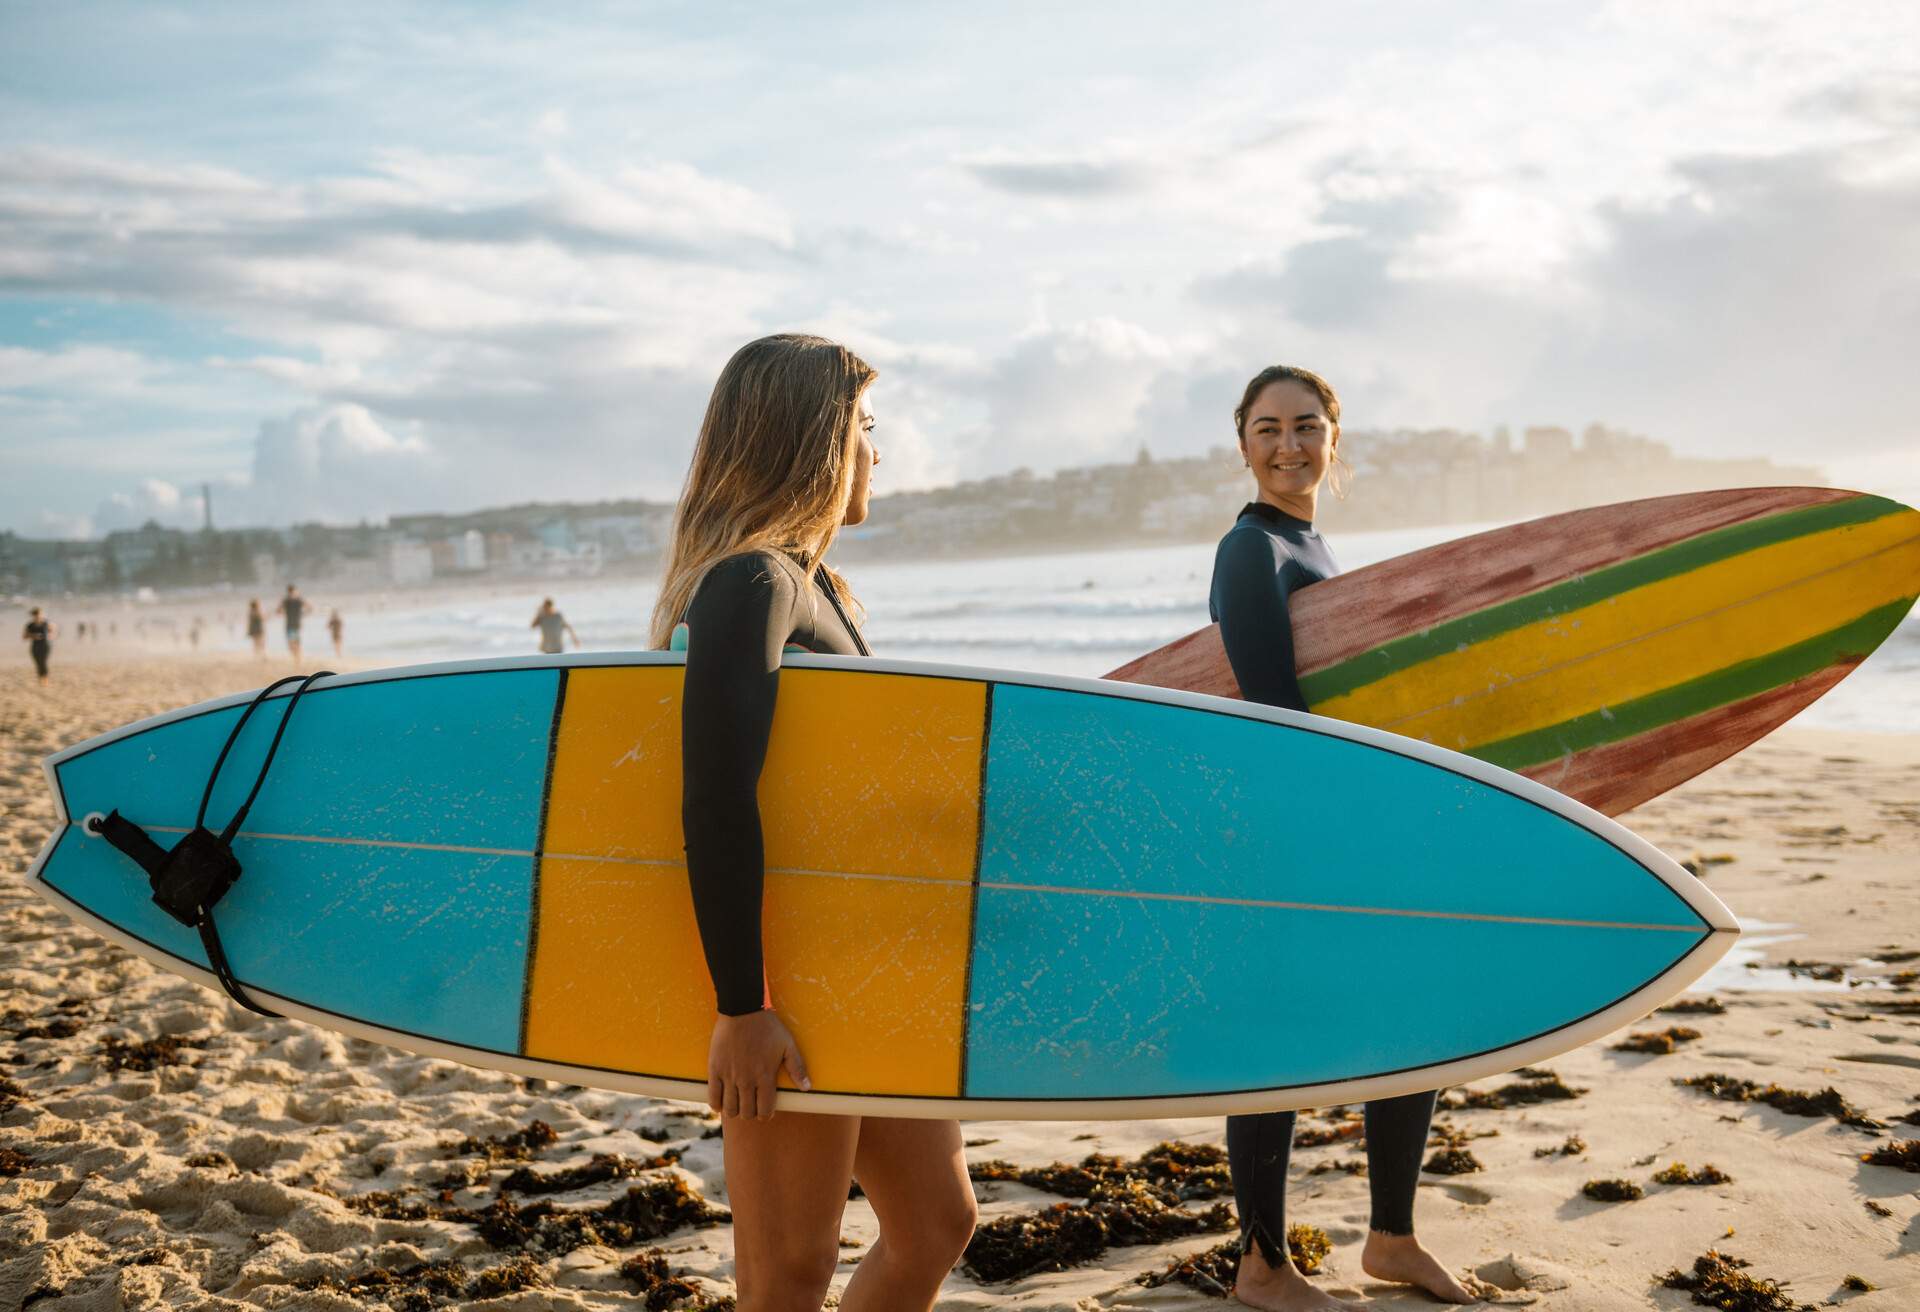 DEST_AUSTRALIA_THEME_BEACH_SURFING